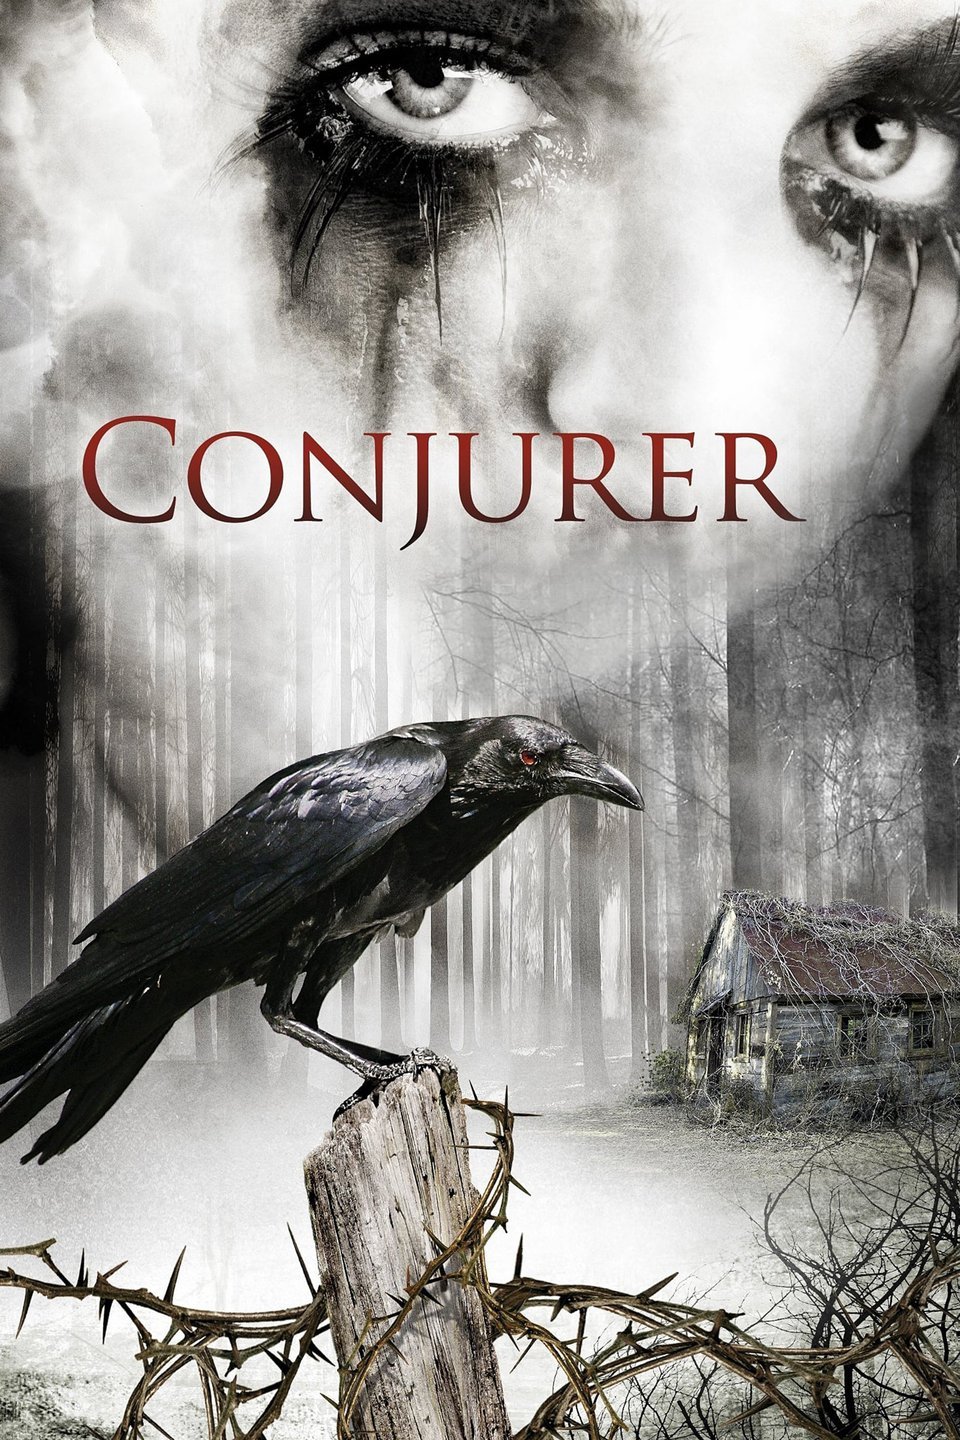 Conjurer [Sub-ITA] (2008)